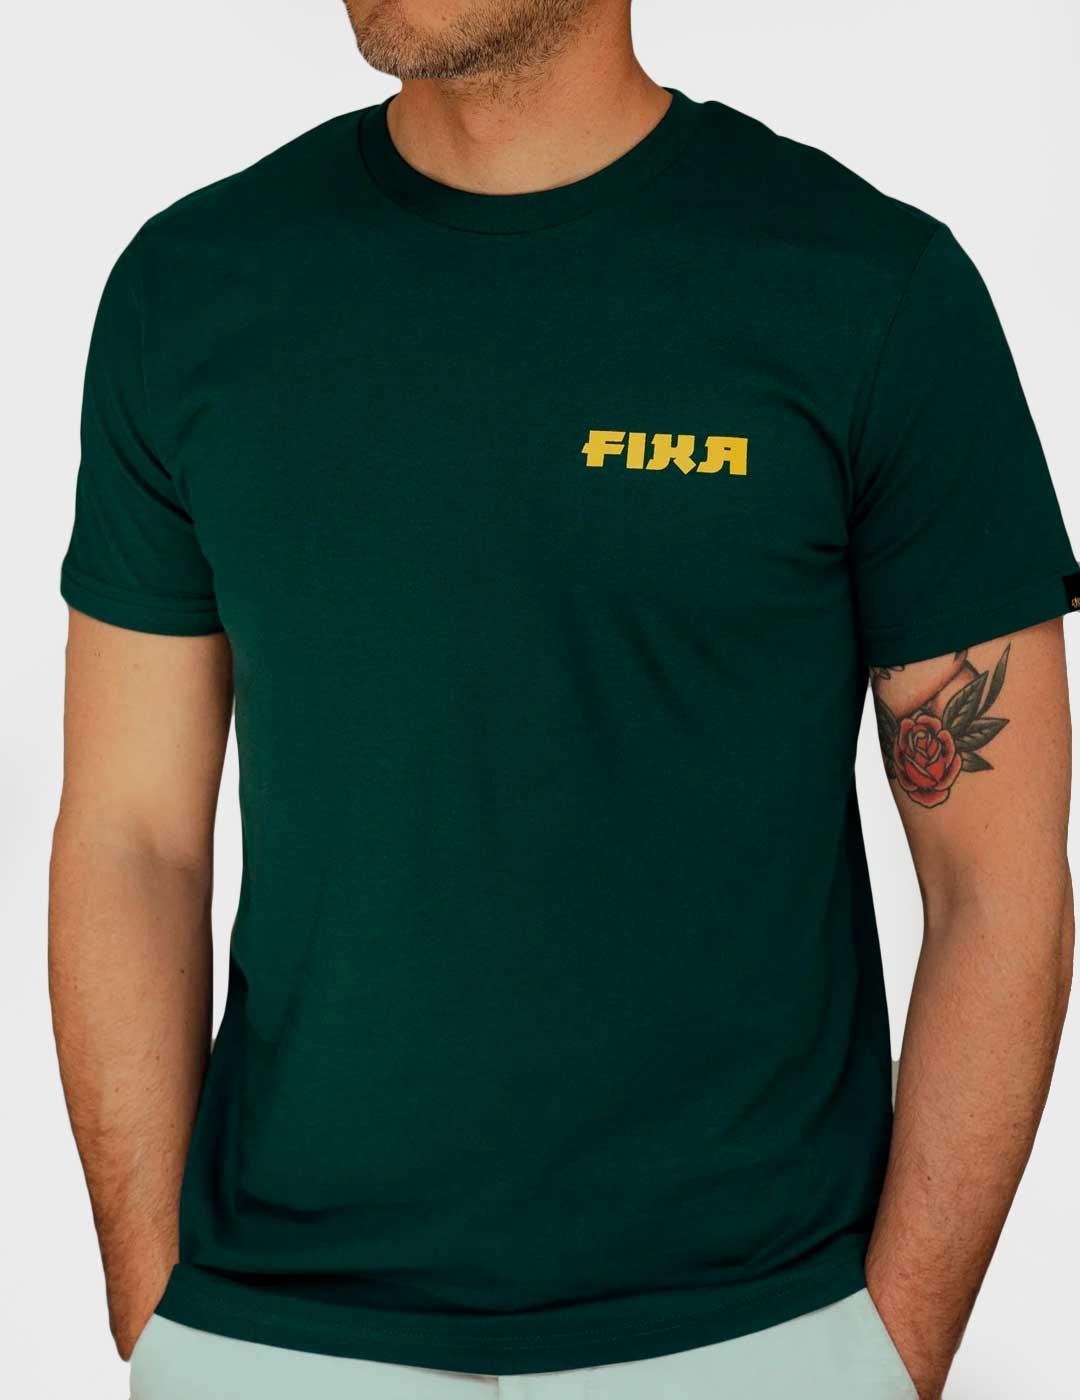 Camiseta Fika Go With The Slow verde unisex